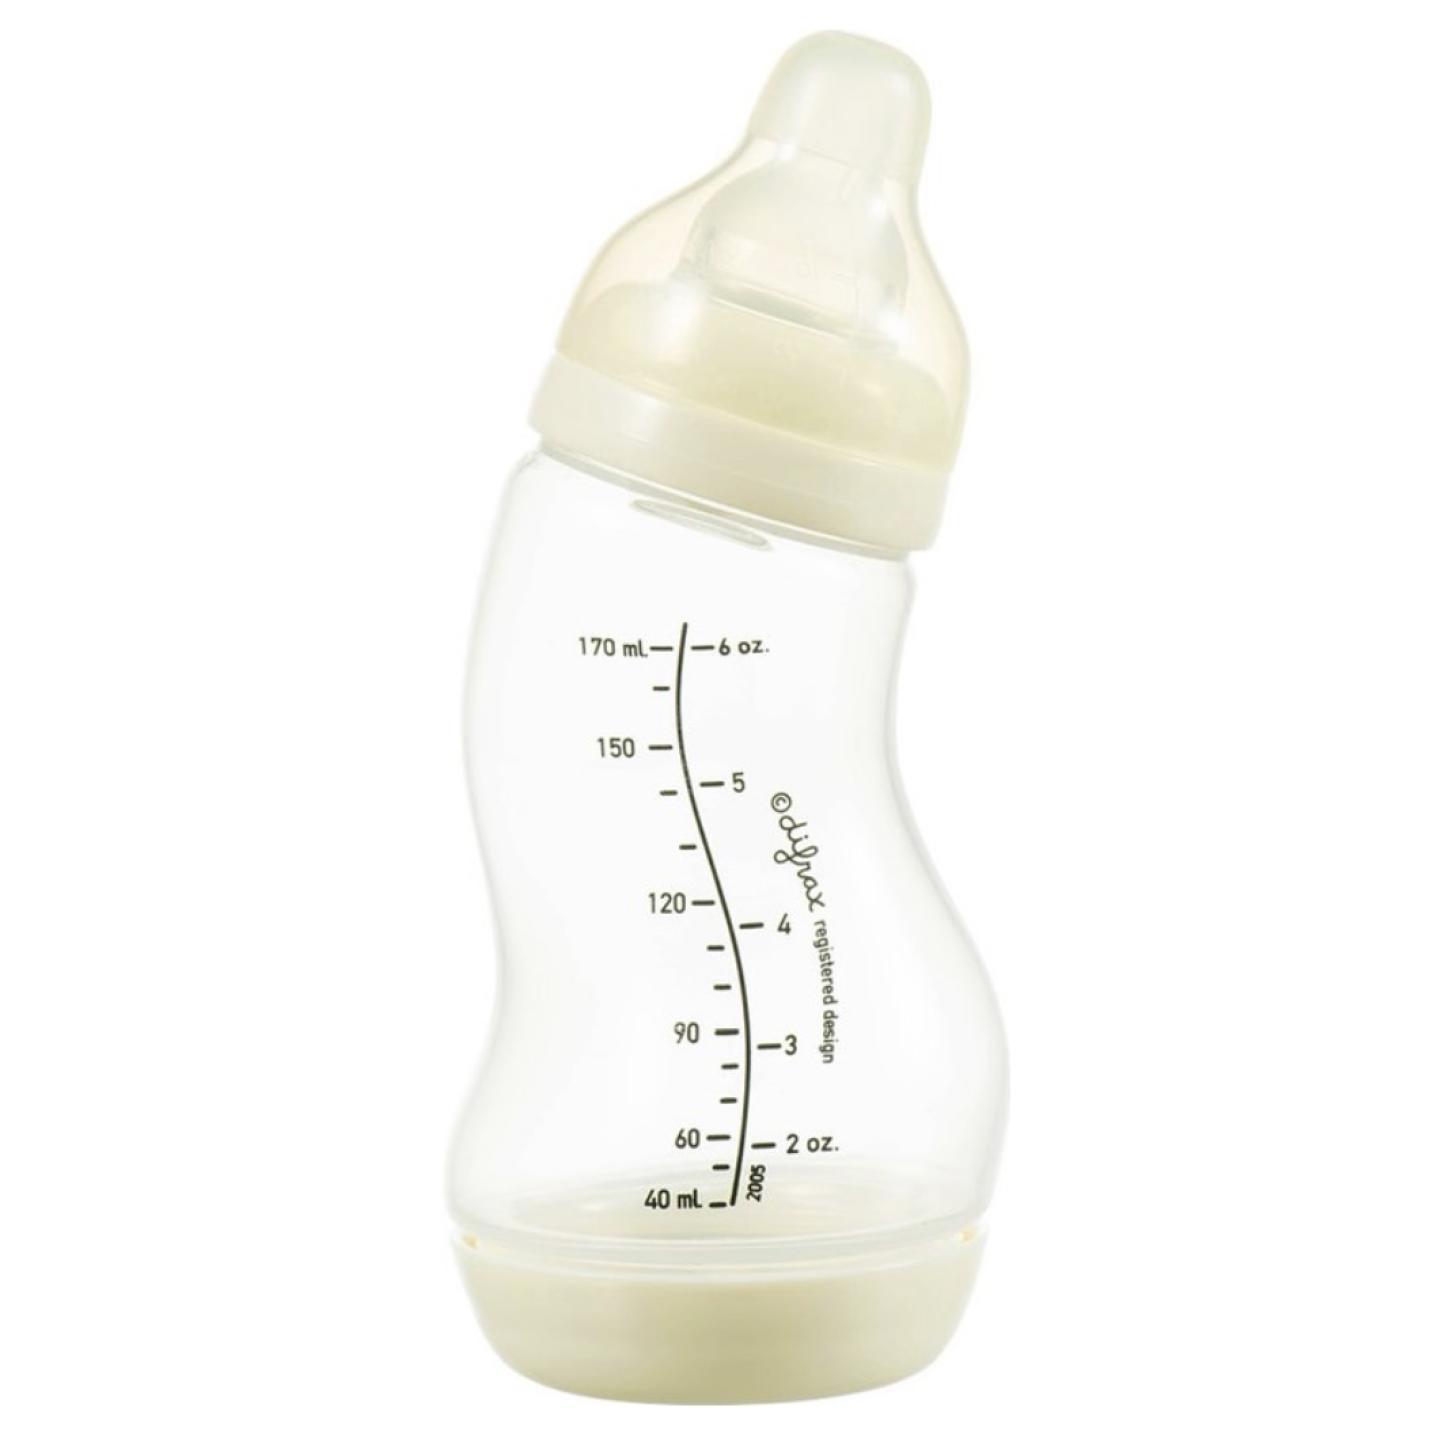 S-Fles Crème baby fles crème in s vorm met maatverdeling op fles en speen transparant erop schroefdop onderin